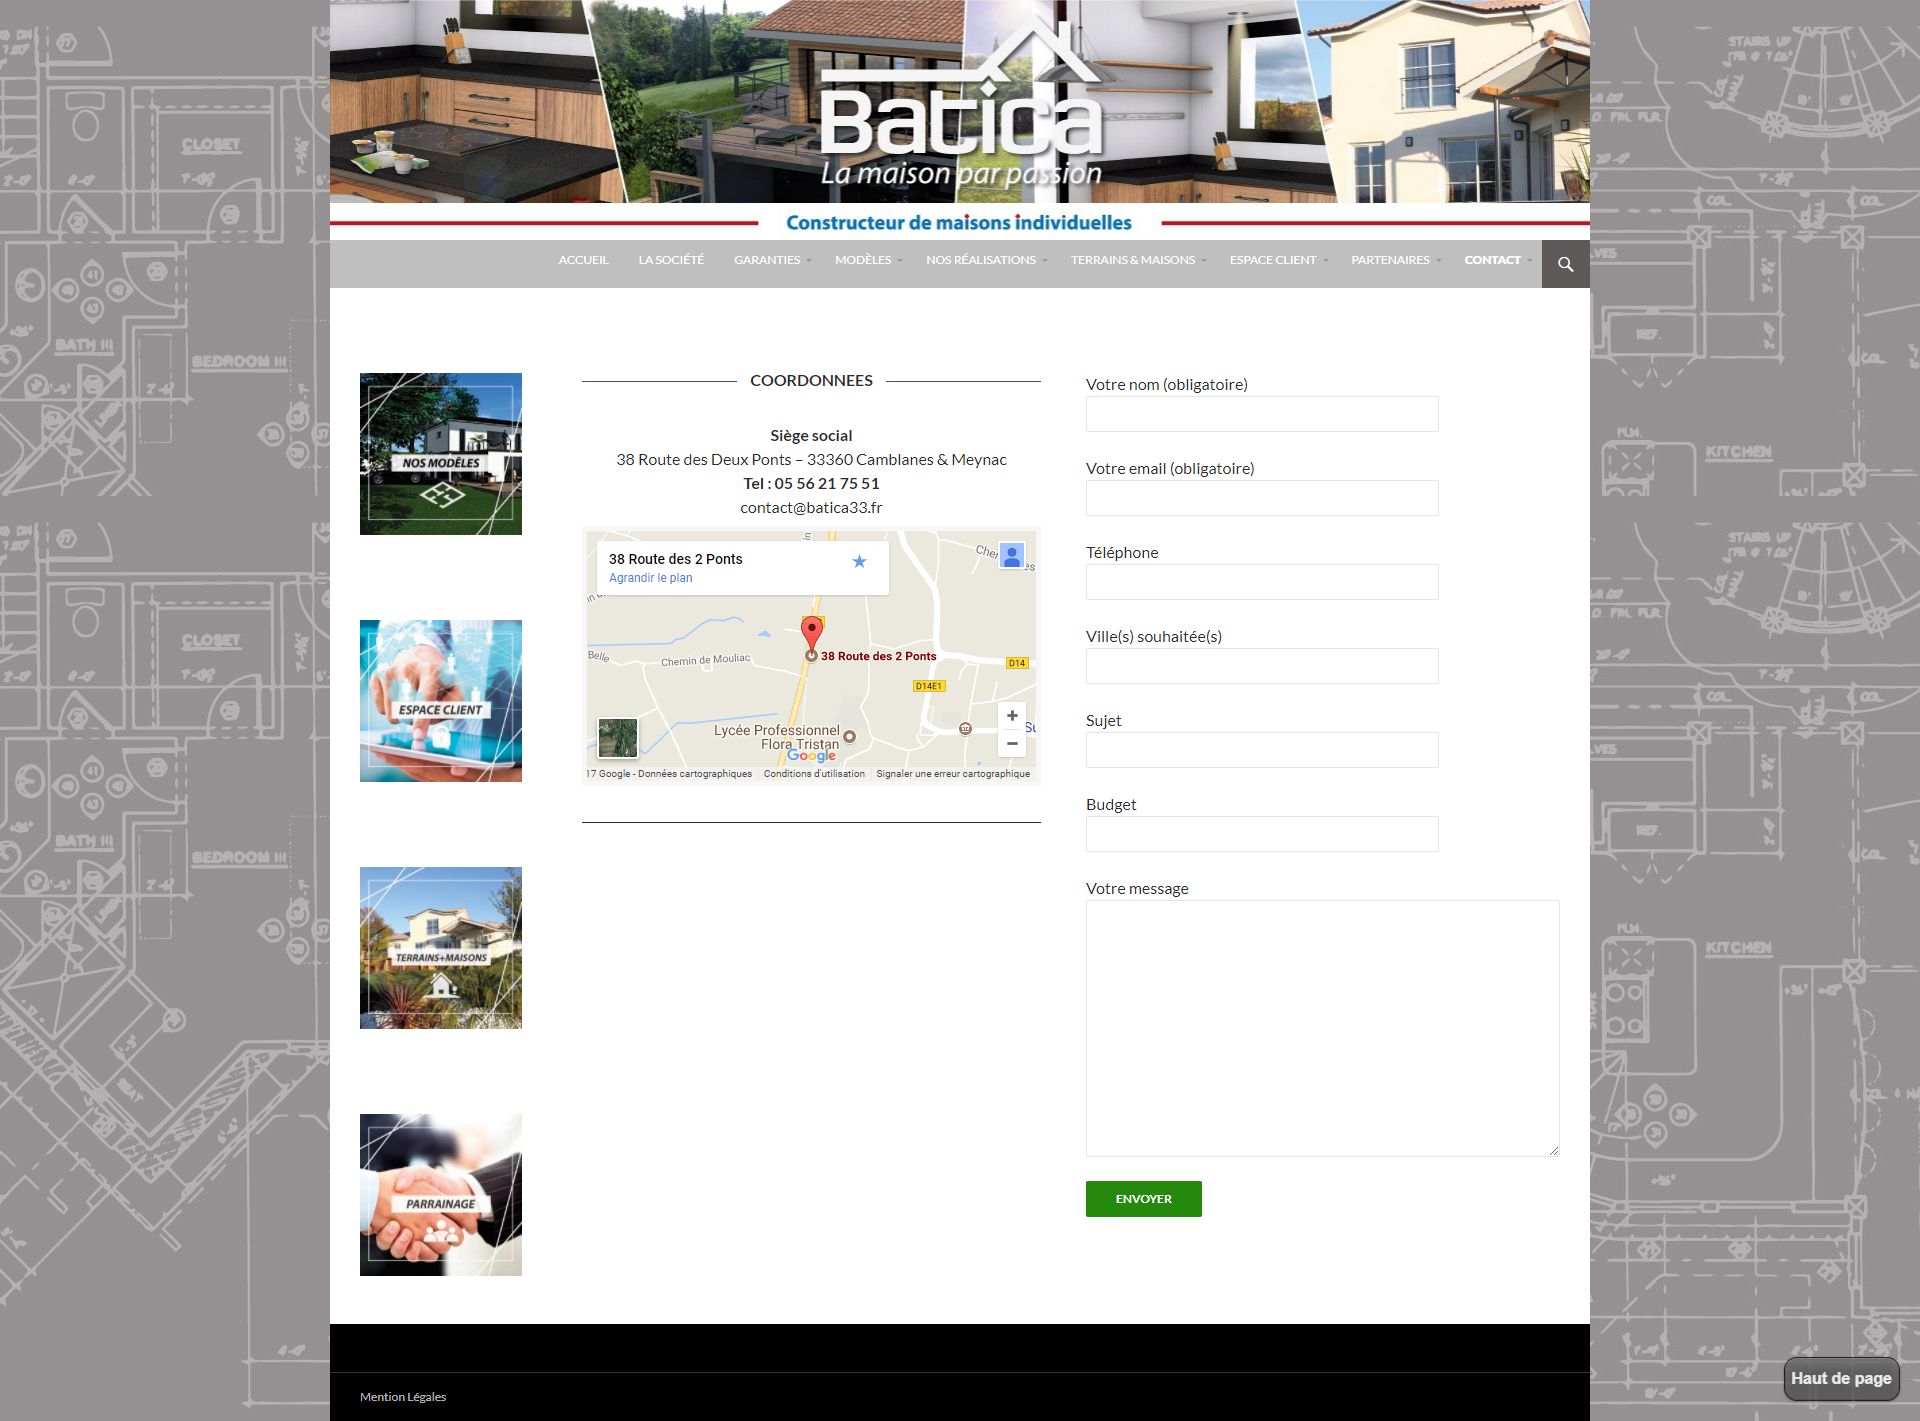 FireShot Pro Screen Capture #010 - 'Contact I BATICA I Constructeur de maisons individuelles' - www_batica33_fr_contact